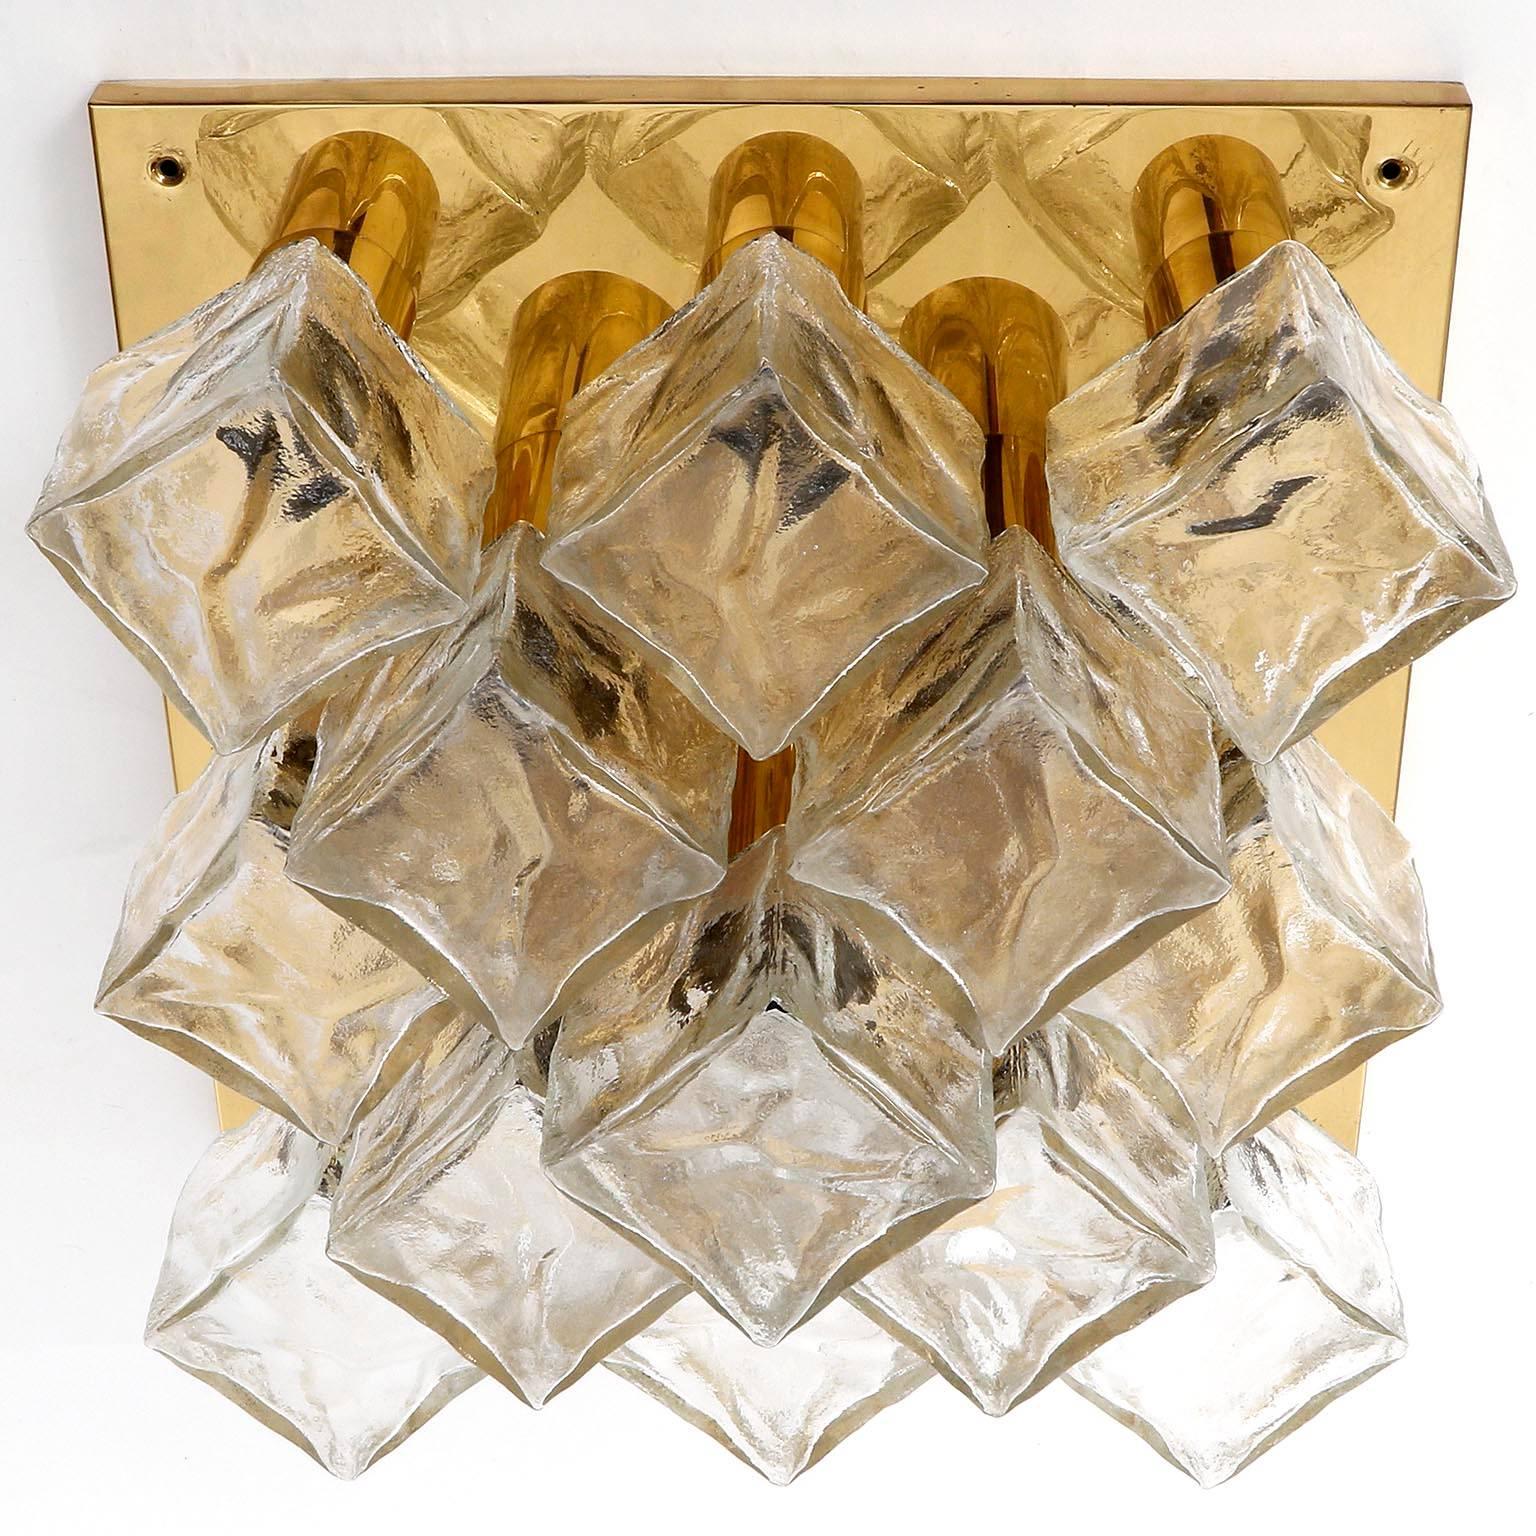 Eine von drei Leuchten des Modells 'Cubus' (deutsch 'Würfel') von Kalmar, Österreich, hergestellt in der Mitte des Jahrhunderts, um 1970 (Ende der 1960er und Anfang der 1970er Jahre).
Sie sind aus poliertem Messing und mattierten kubischen Gläsern